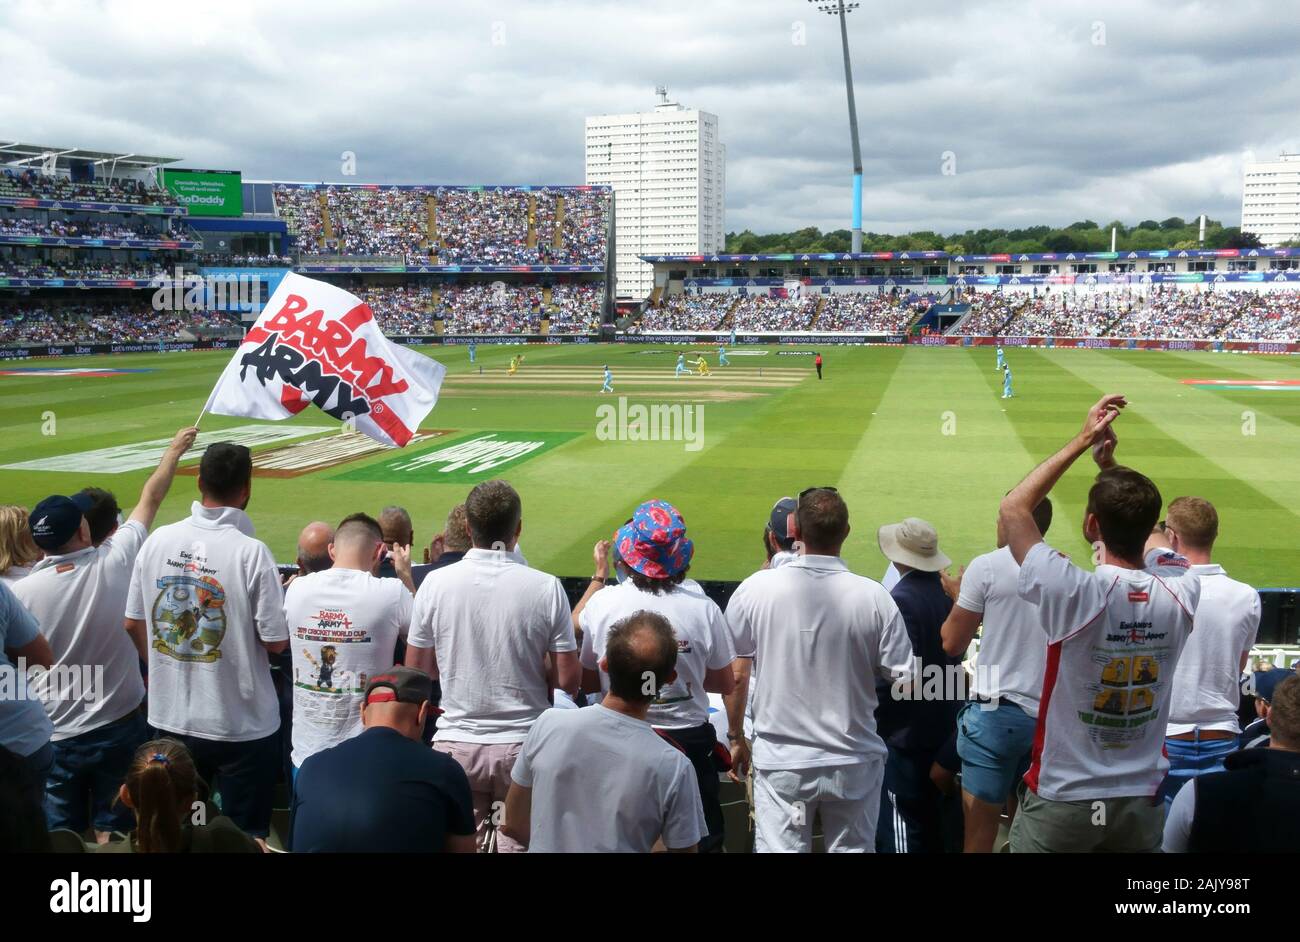 L'Esercito Barmy in piena voiceas inglese di cricket beat in Australia nel 2019 world cup semi final a Edgbaston England Regno Unito Foto Stock